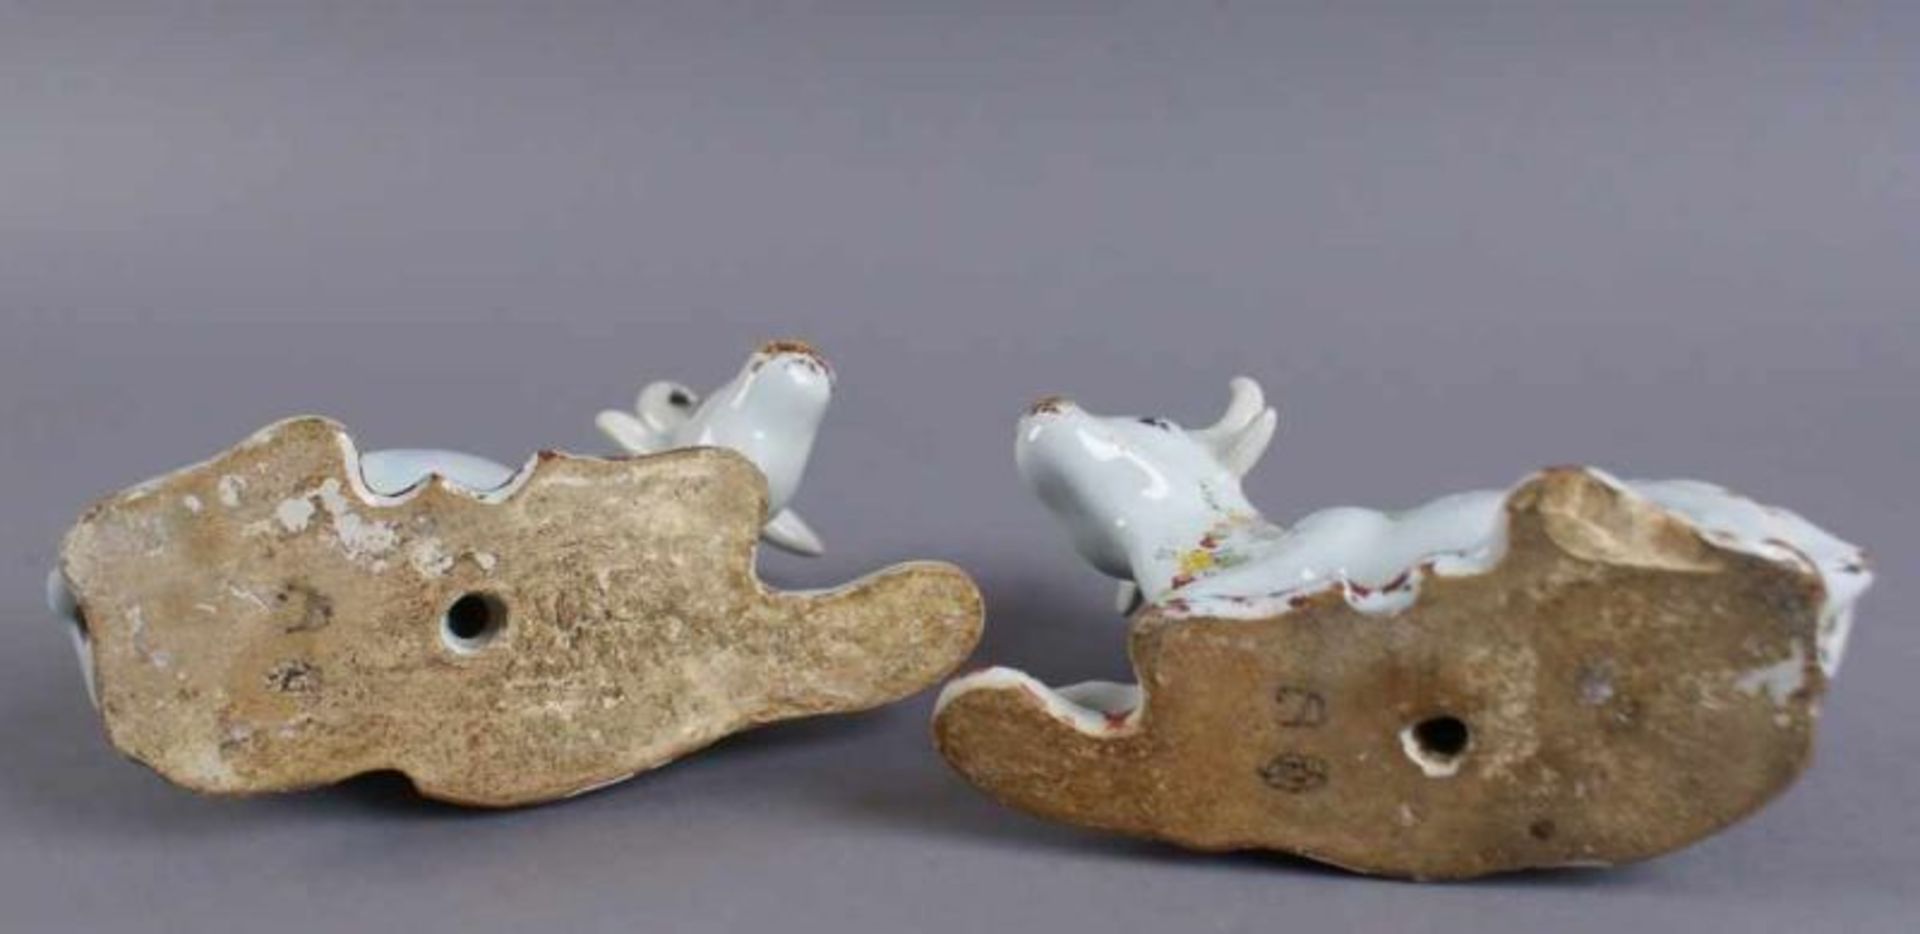 Zwei Kühe, Delft, bunt glasierte Keramik, 18. JH, alte Restaurierung, 10x15,5 x7 cm 20.17 % buyer' - Bild 11 aus 12